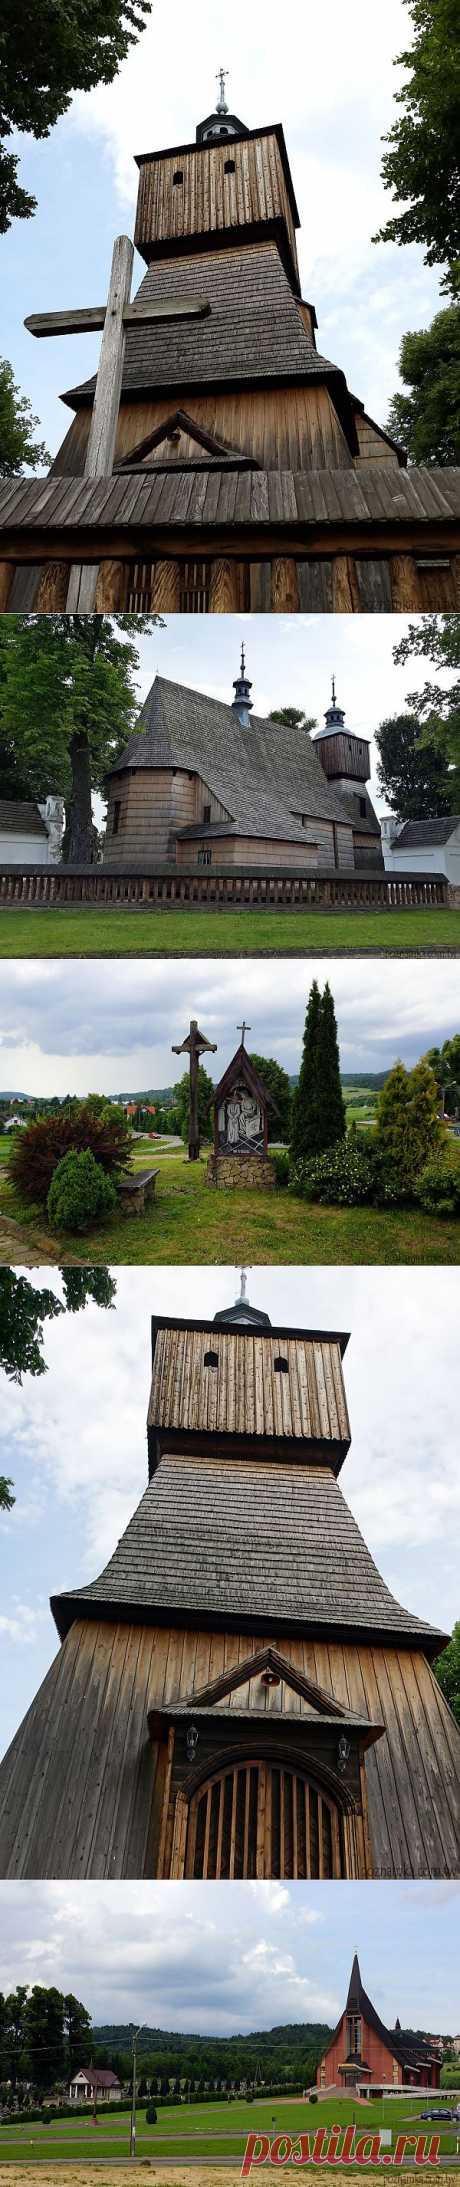 [Польша] Деревянные костелы малой Польши: Костел Всех святых в Близне | Путешествуем вместе